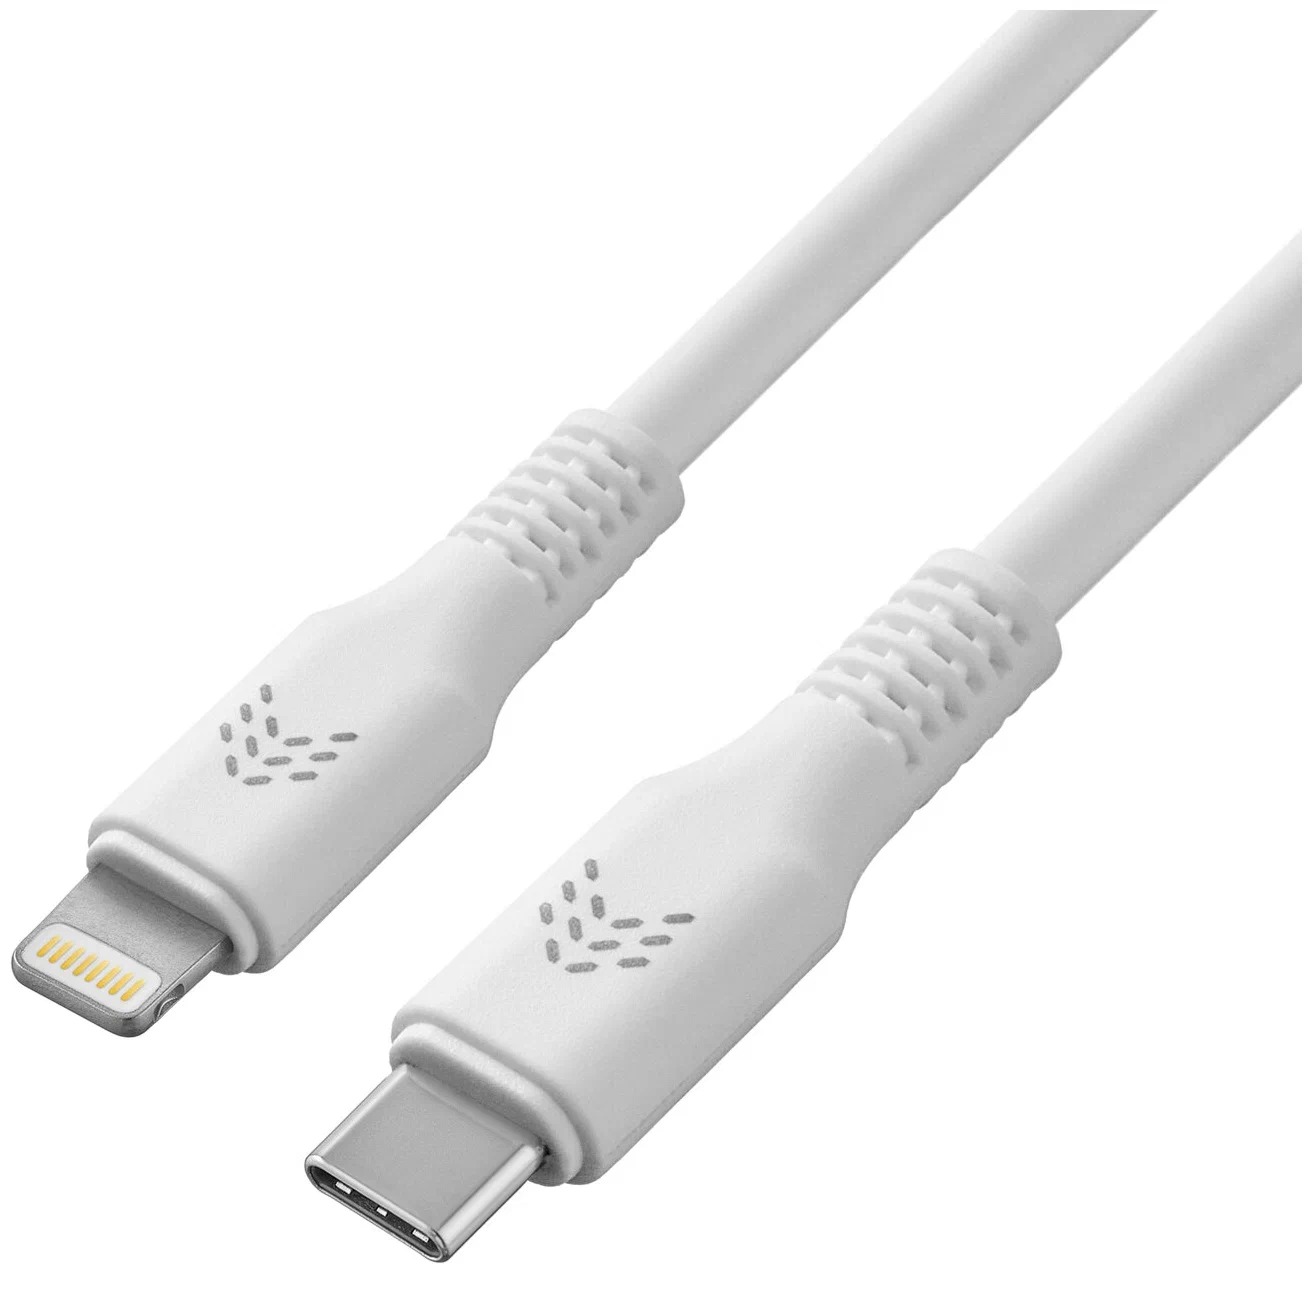 Зарядный кабель ROCKET Flex USB-C/Lightning 1 м, оплётка TPE, белый